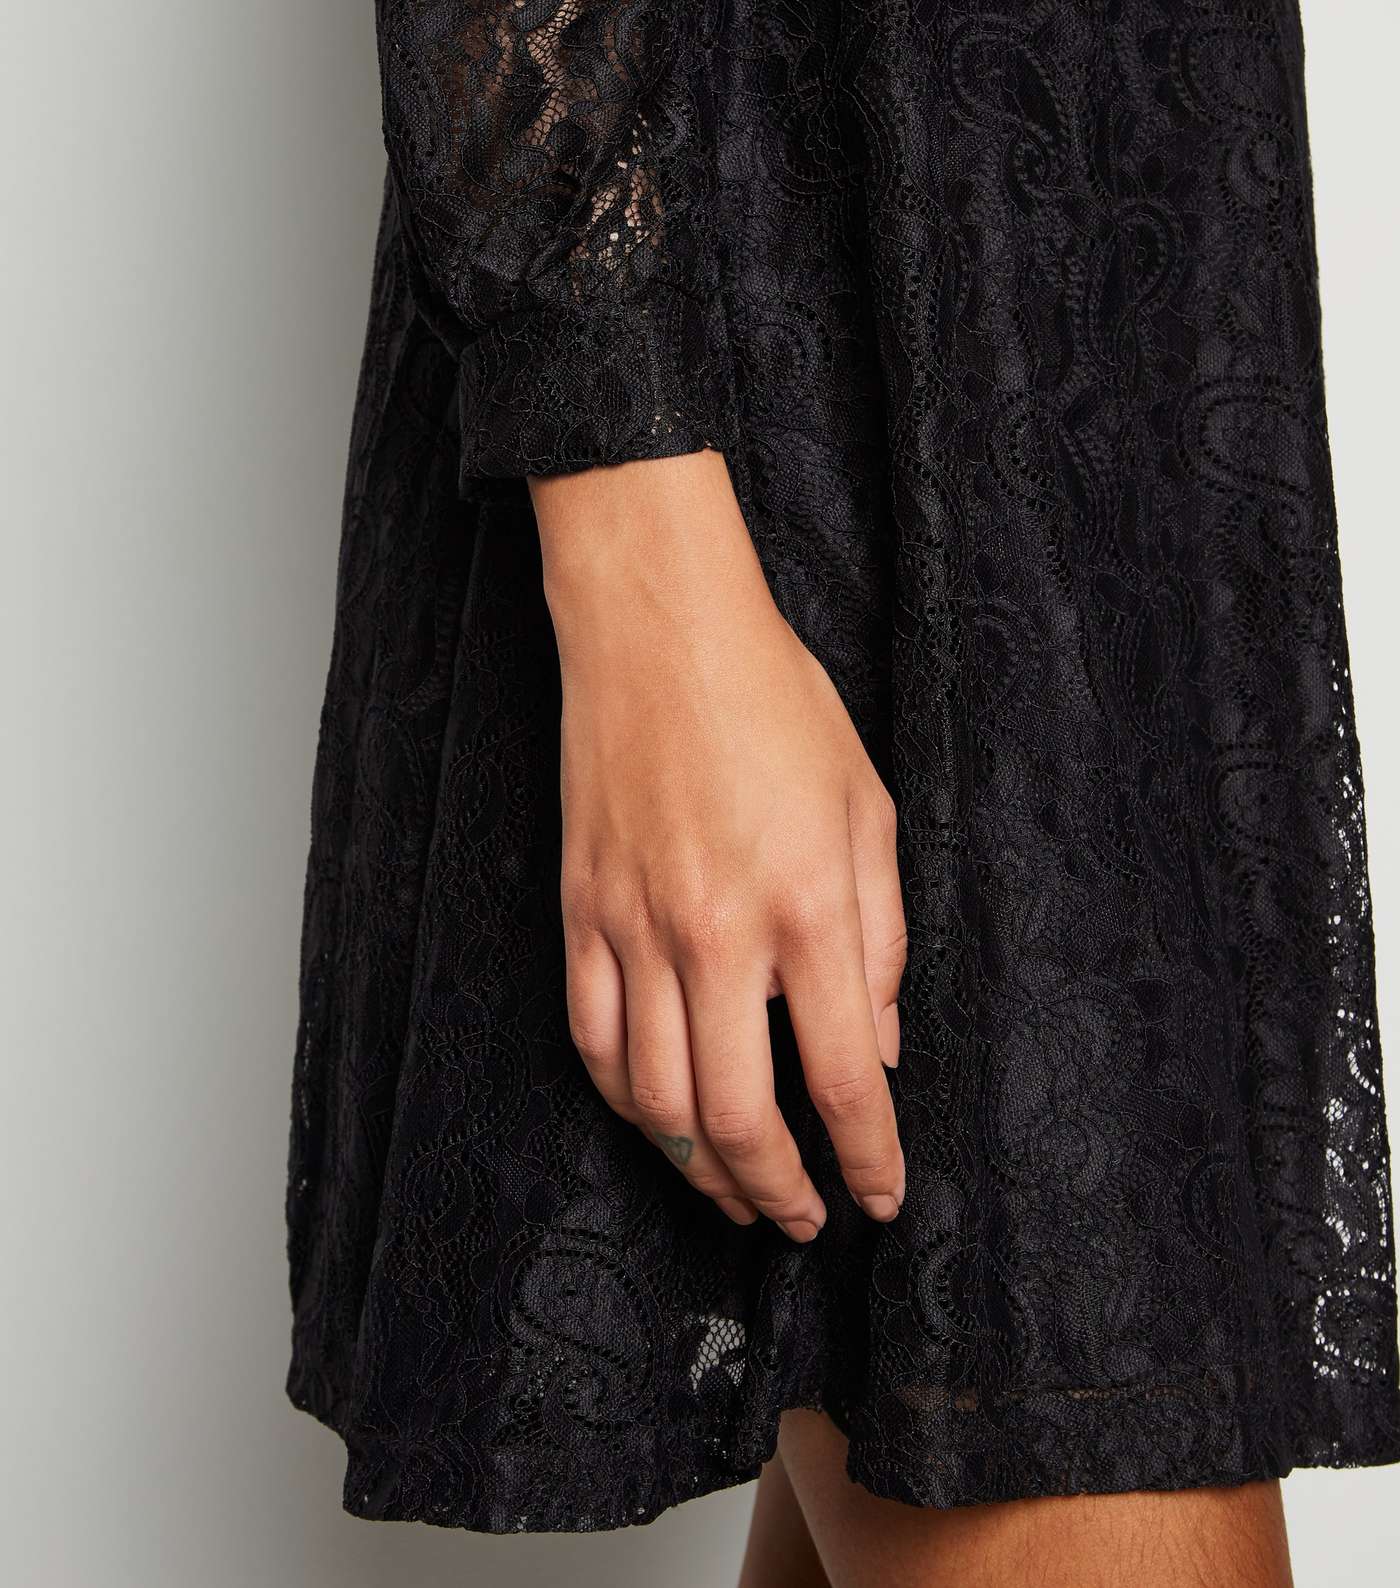 Mela Black Lace Tunic Dress Image 2